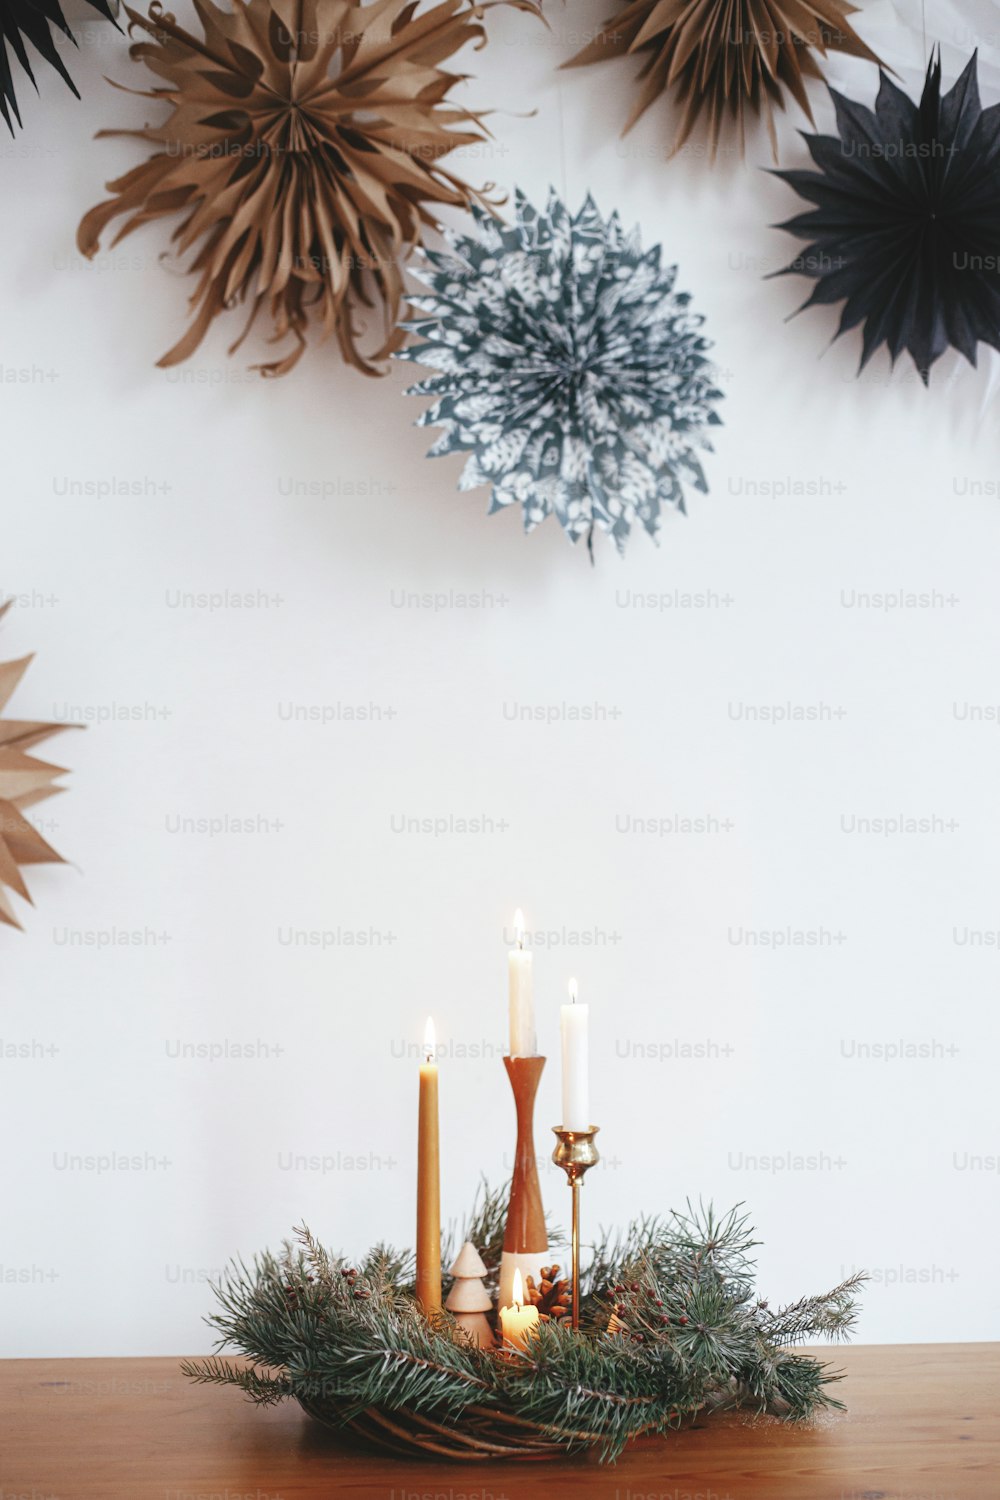 Couronne de noël élégante avec des bougies et des décorations sur une table en bois sur fond de mur blanc avec des étoiles en papier suédois. Heure d'hiver atmosphérique. Avent de vacances, hygge festif scandinave